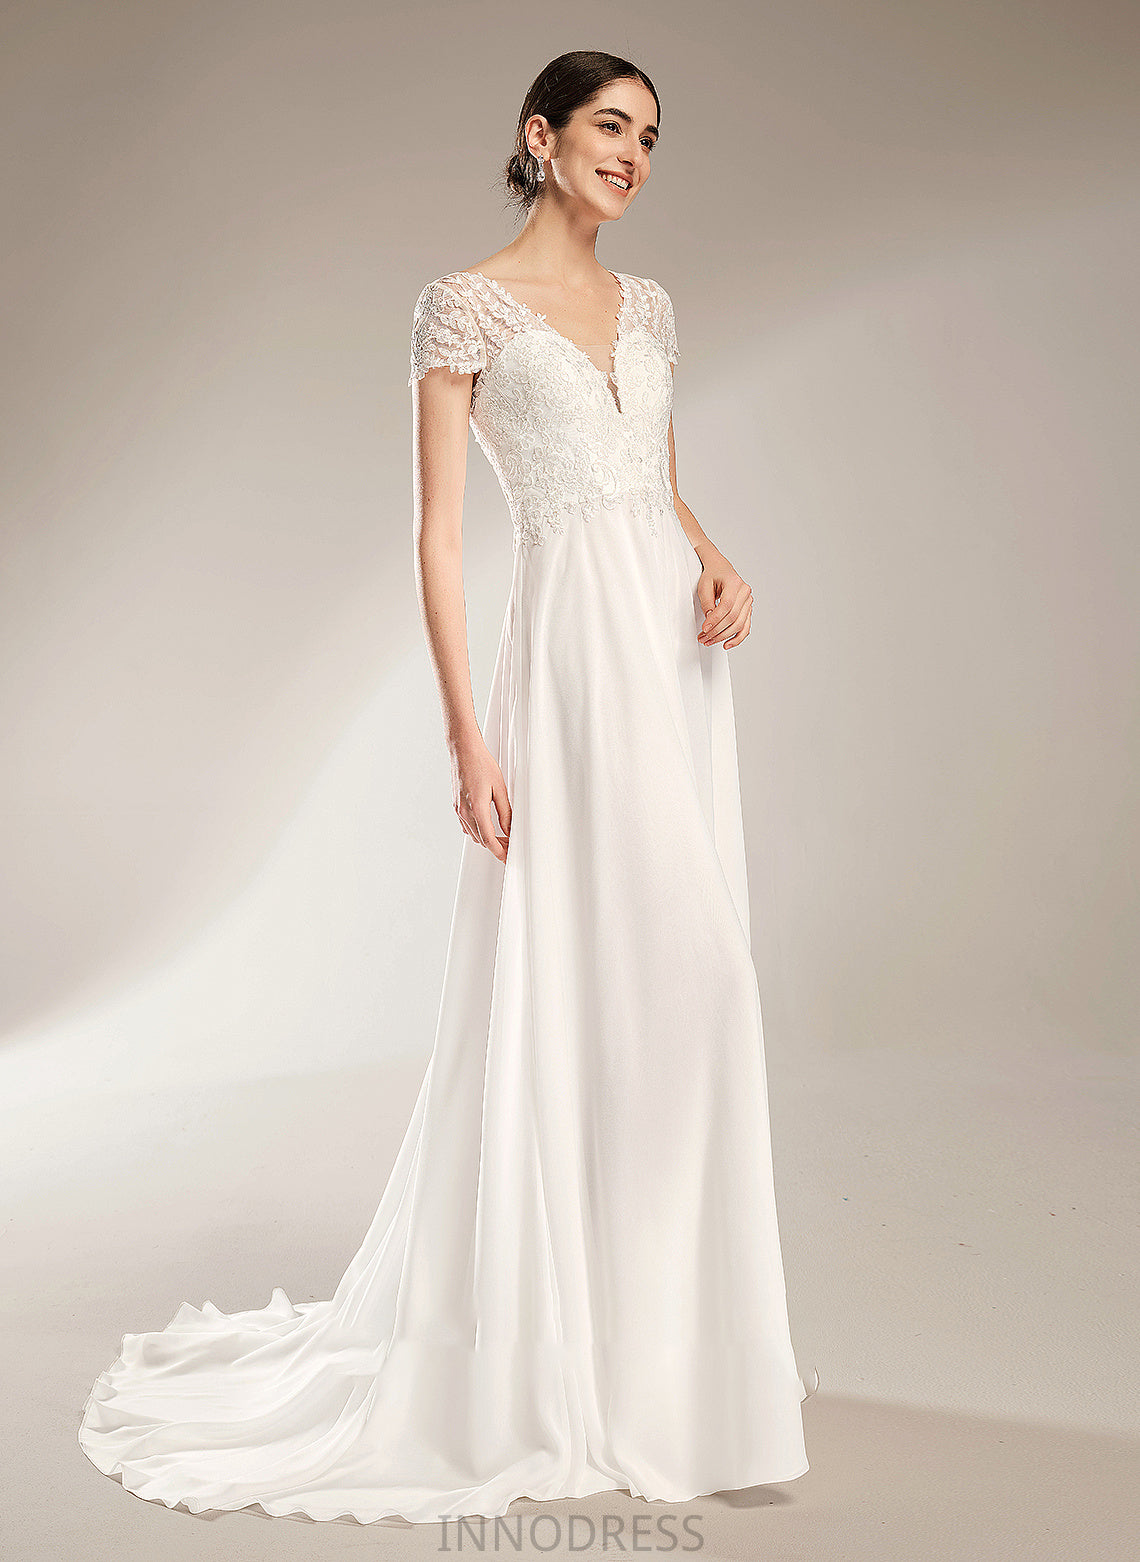 Wedding Dresses Wedding Train Bow(s) A-Line Skyler Dress Court V-neck With